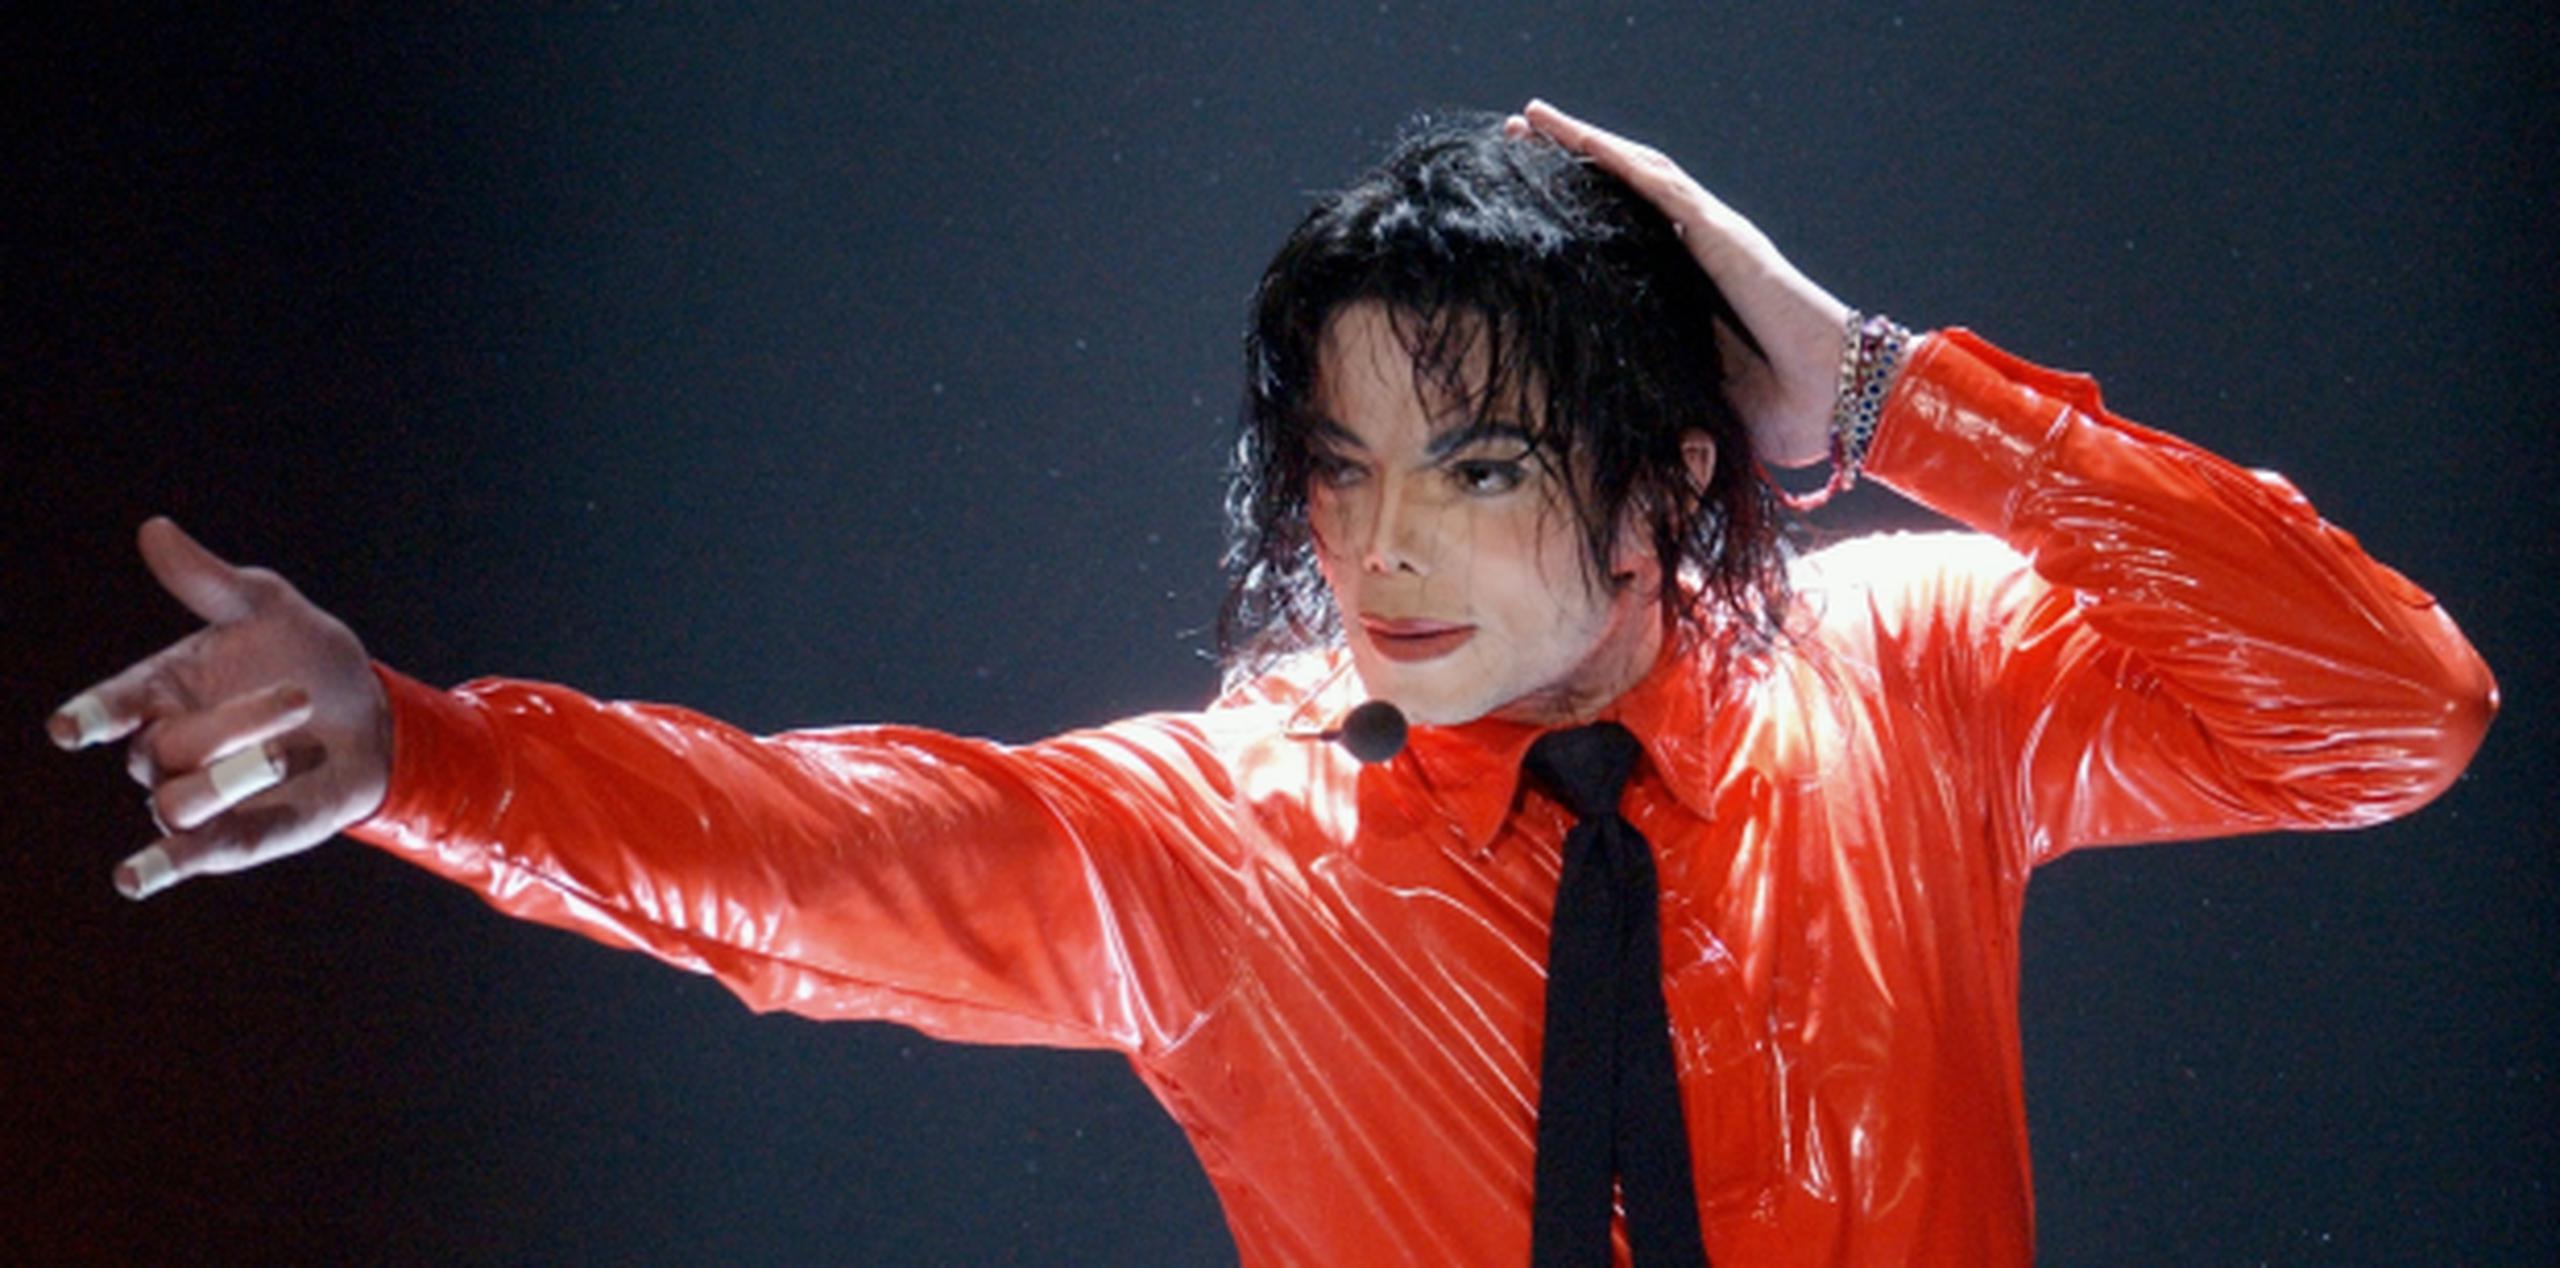 Michael Jackson murió el 25 de junio de 2009. (Archivo)